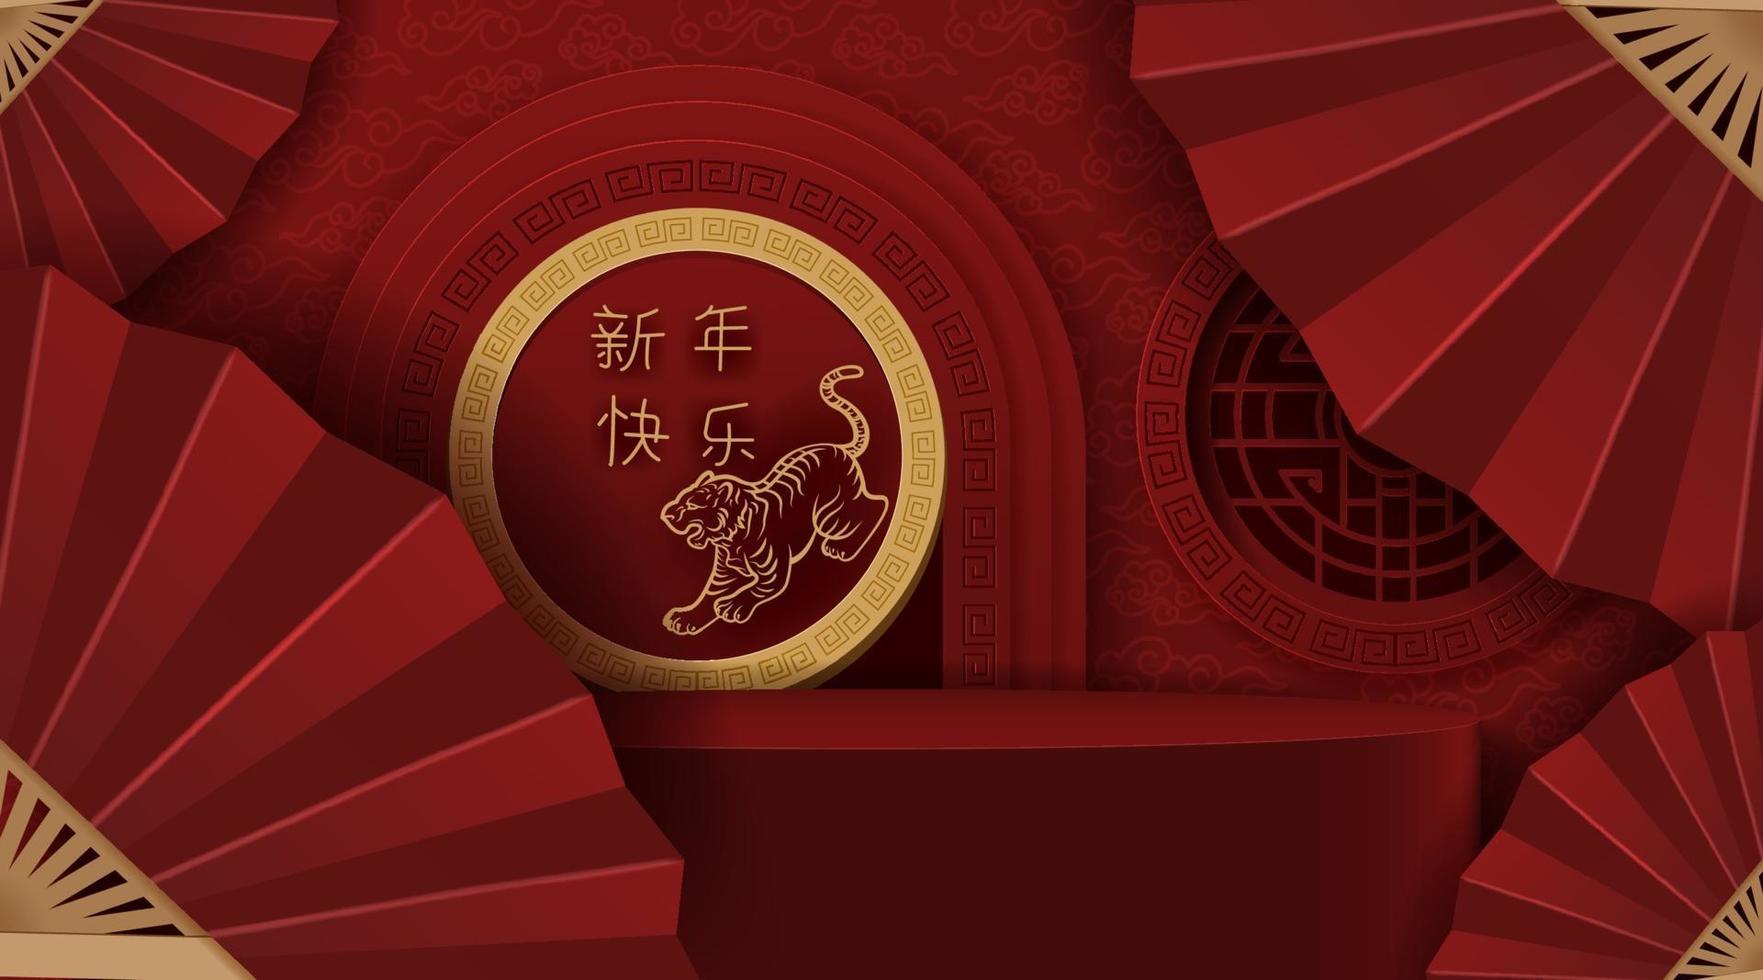 podium style chinois, pour le nouvel an chinois et les festivals. vecteur